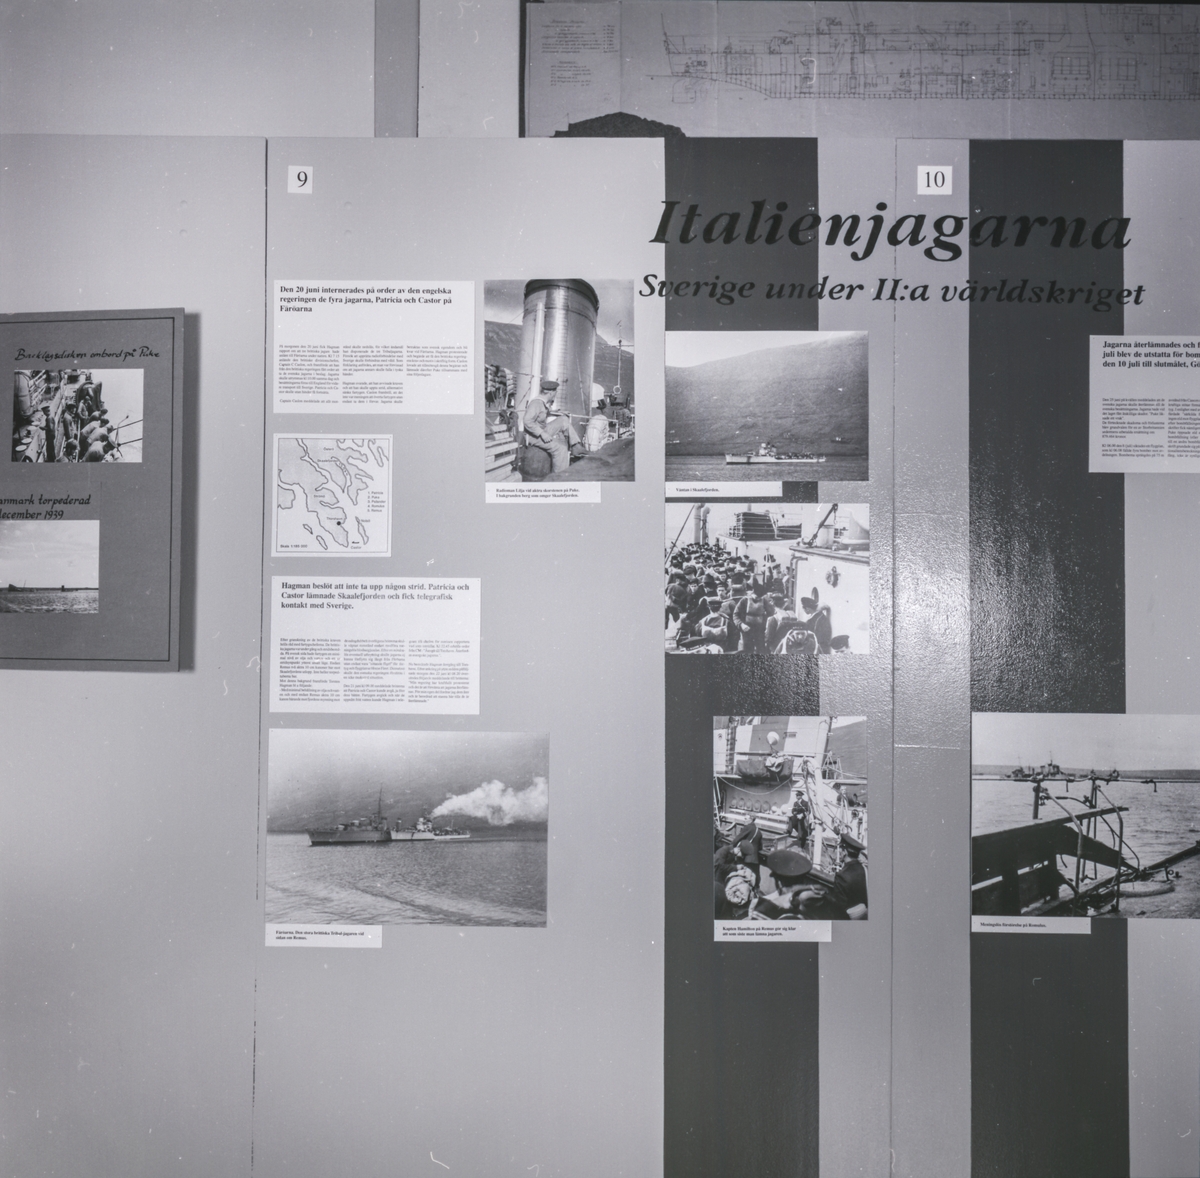 Utställningen Italienjagarna. "Sverige under II:a värdlskriget". Fotografier på skärm.